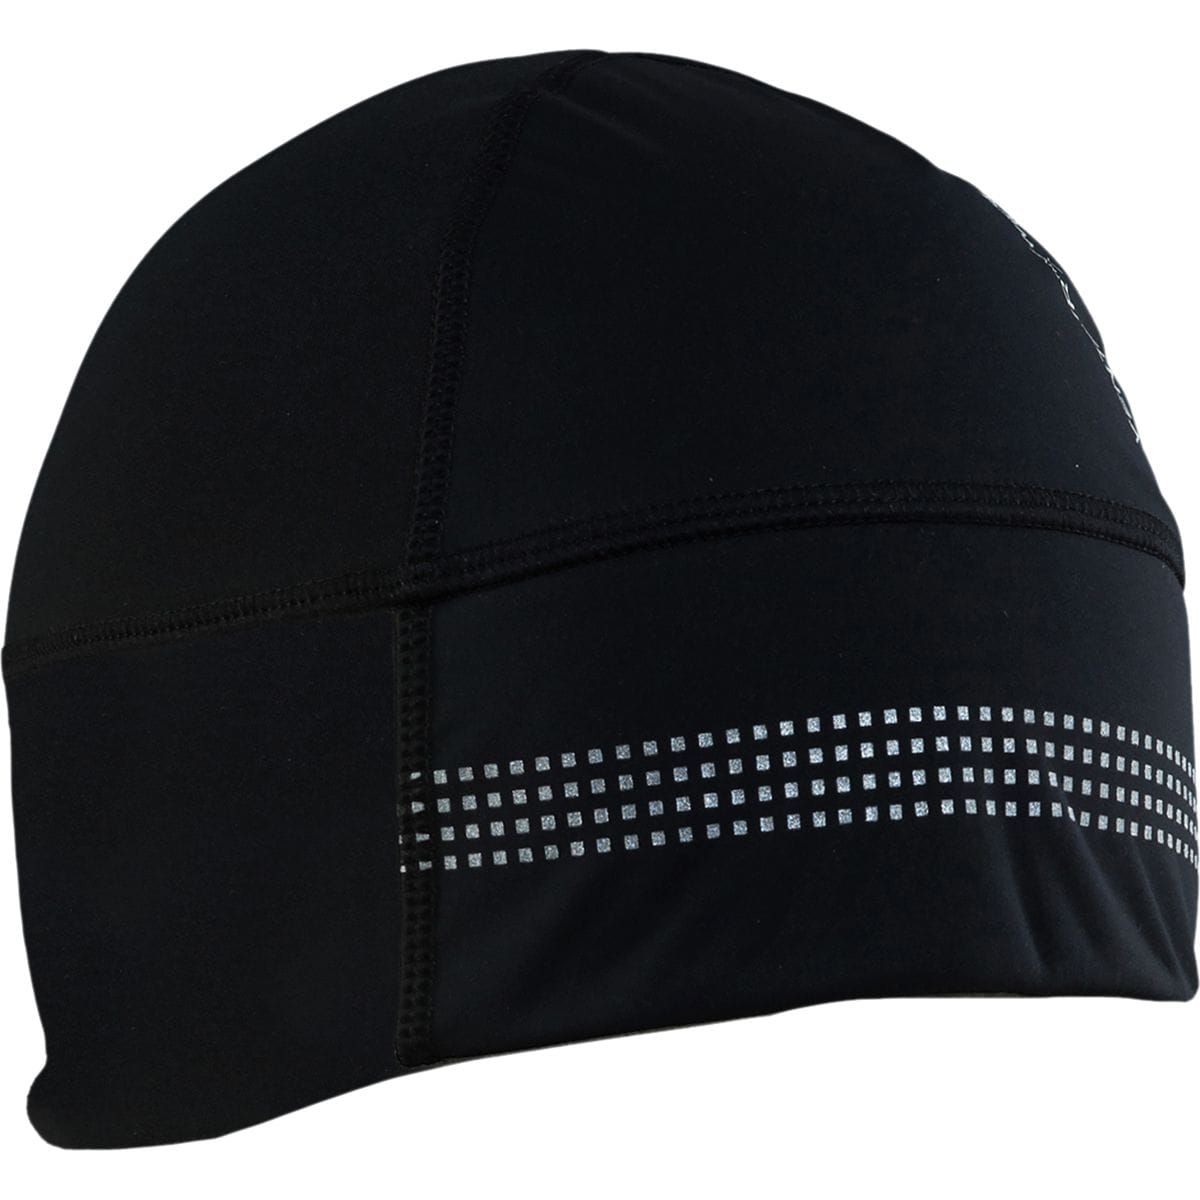 Craft Shelter 2.0 Hat Black, L/XL